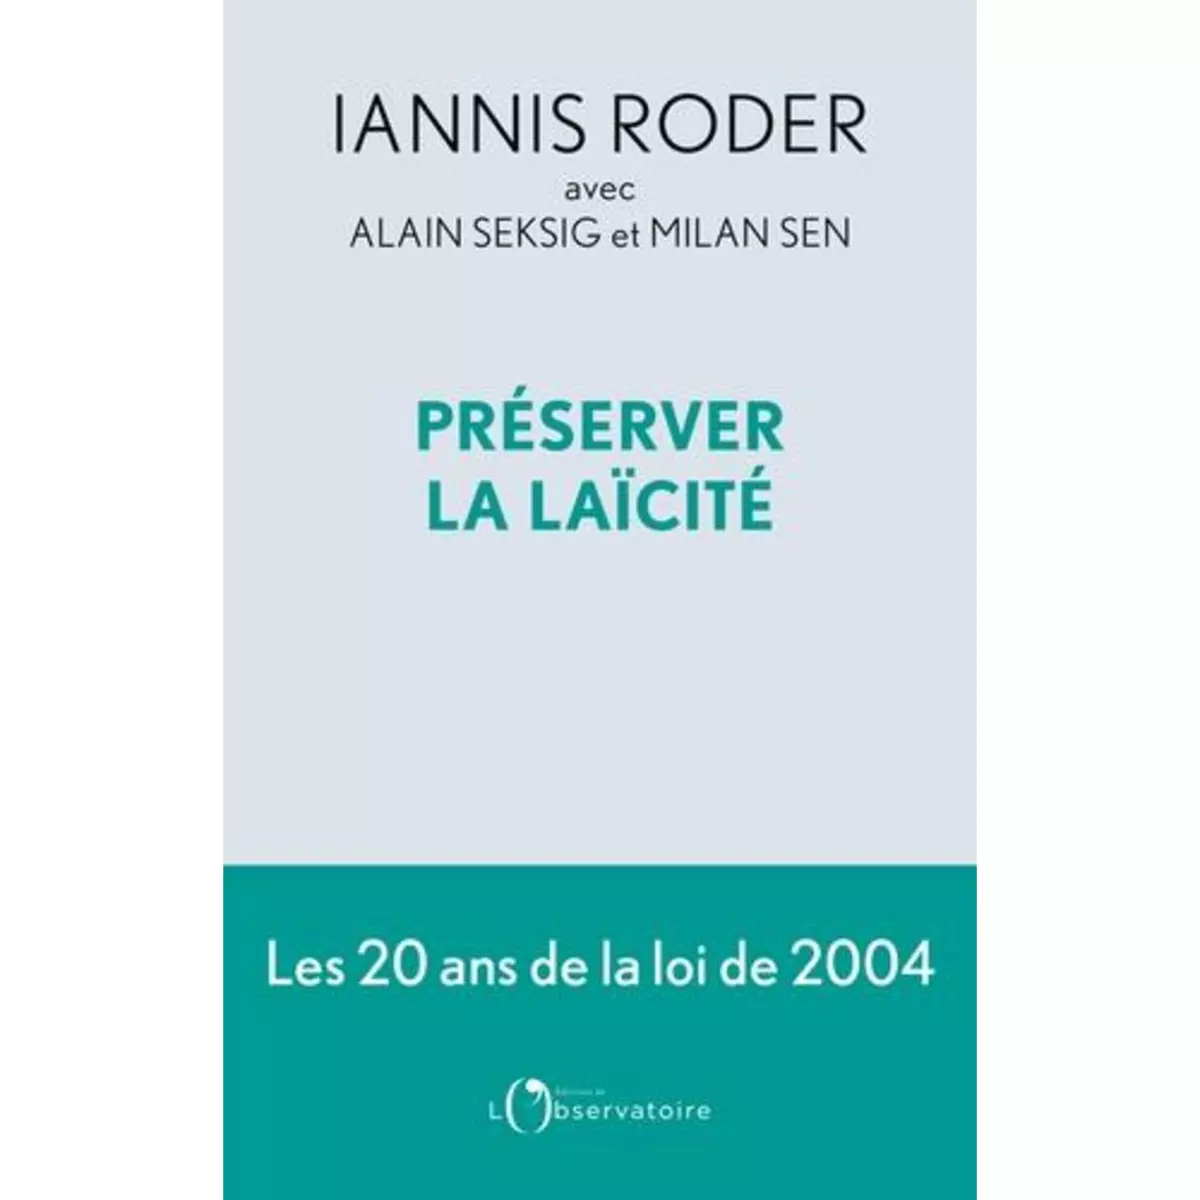  PRESERVER LA LAICITE, Roder Iannis